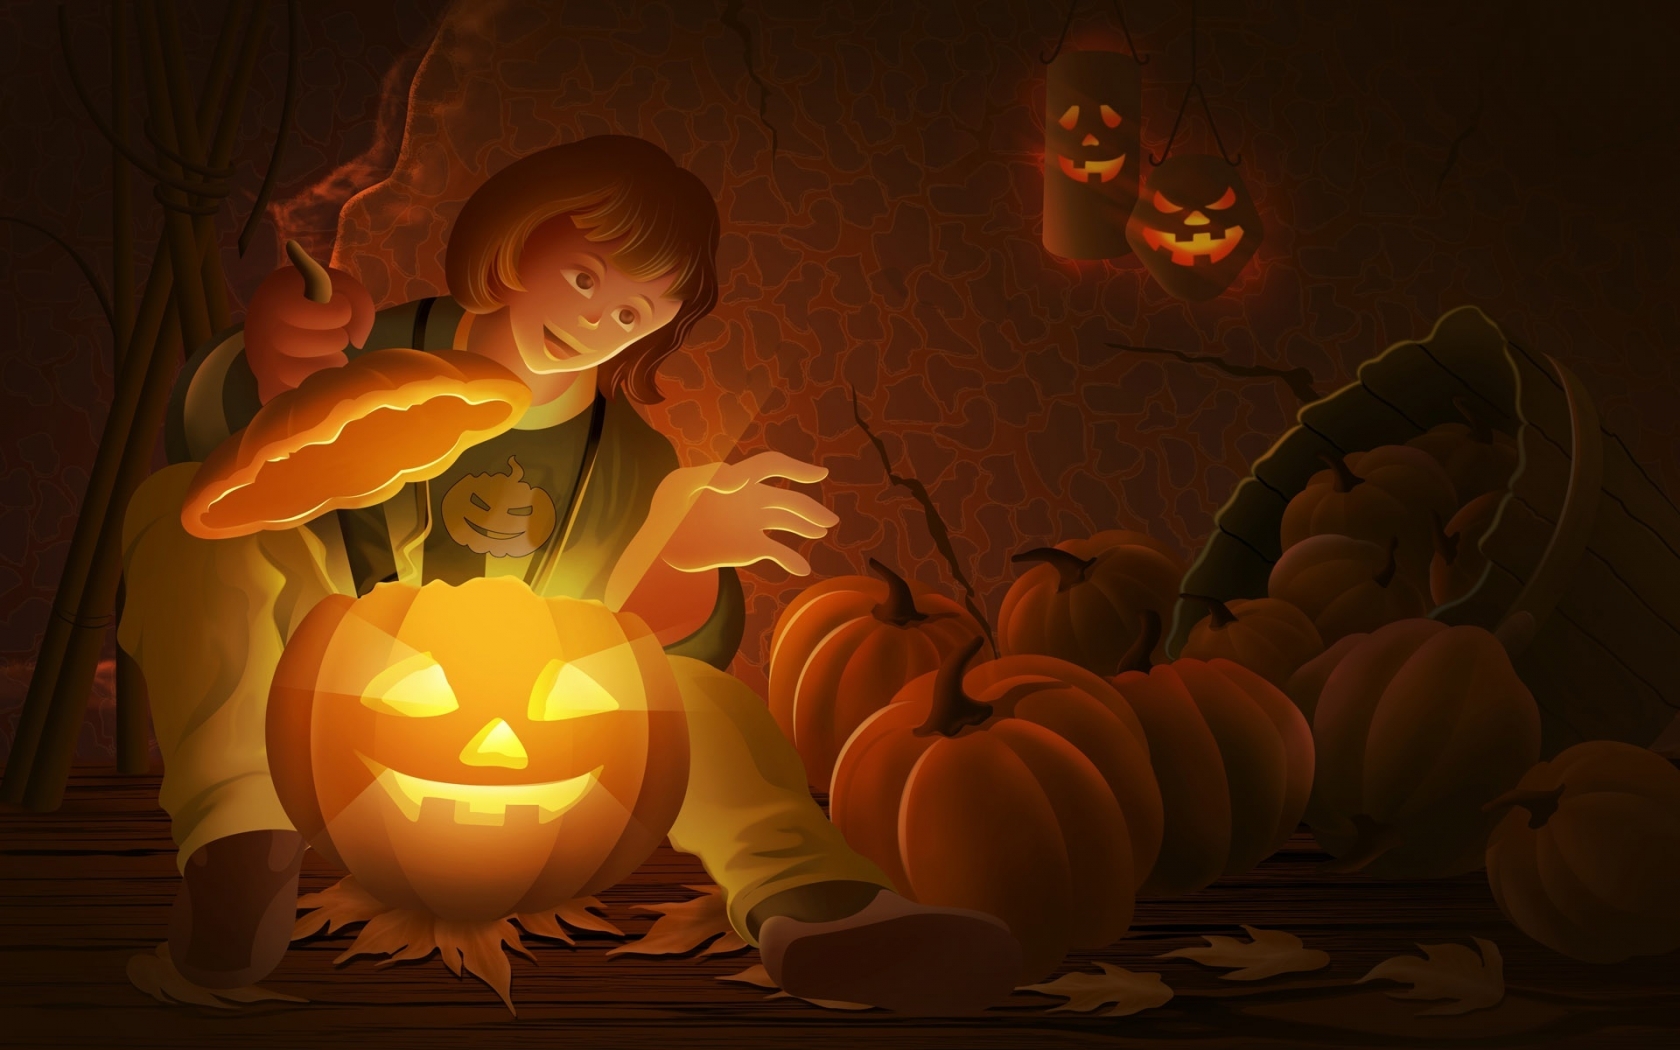 Cool Halloween Pumpkin for 1680 x 1050 widescreen resolution